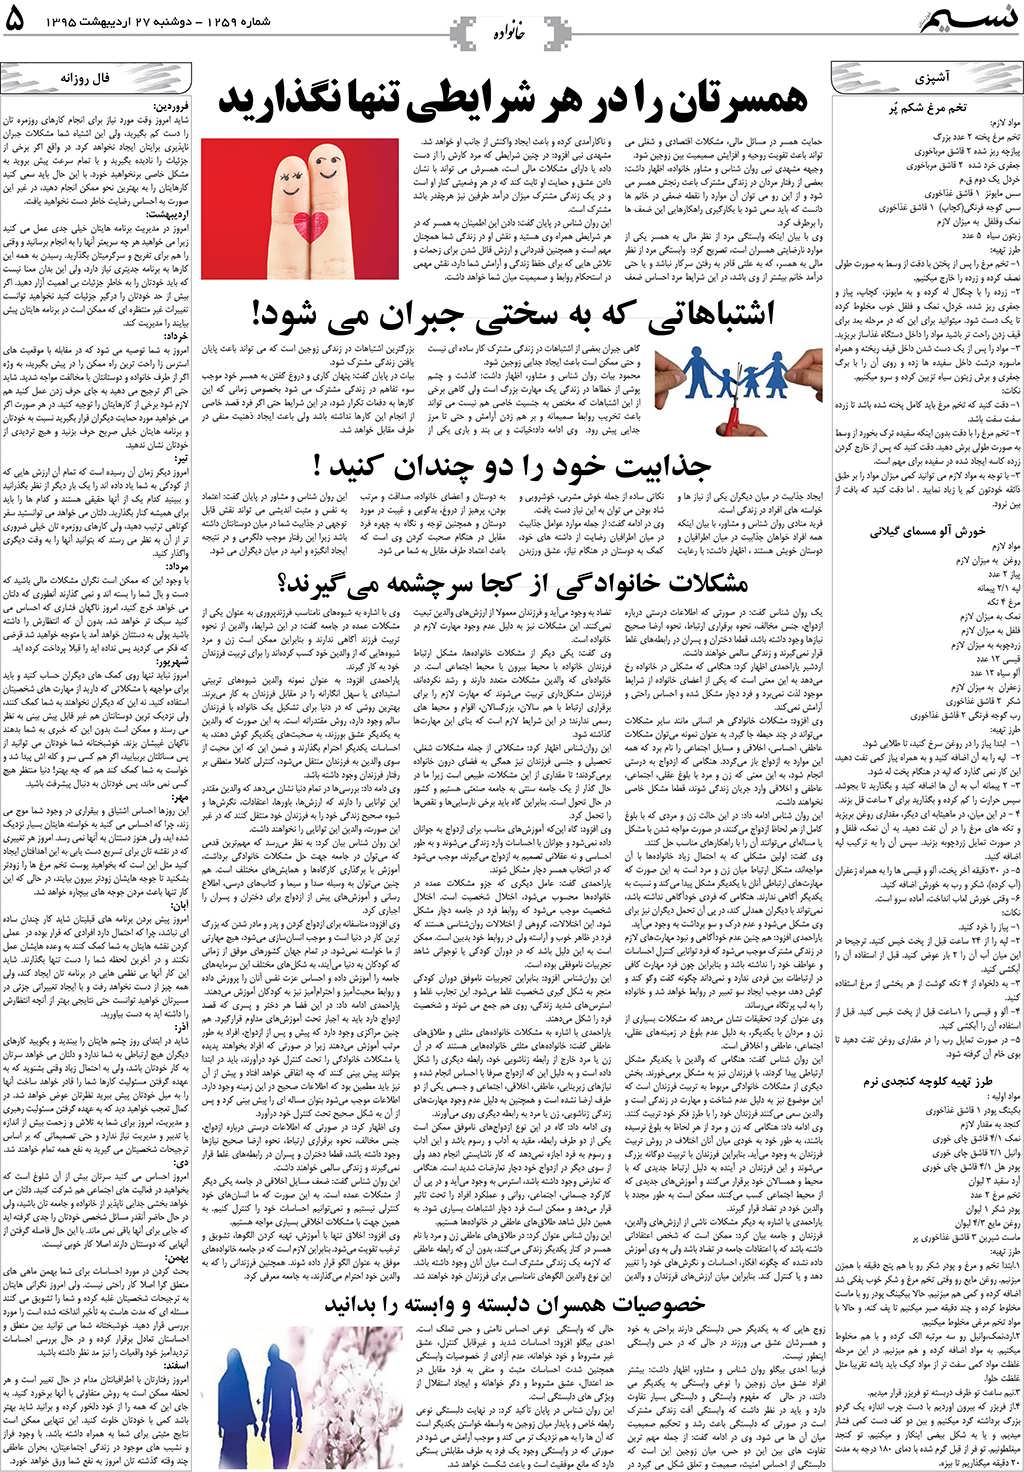 صفحه خانواده روزنامه نسیم شماره 1259